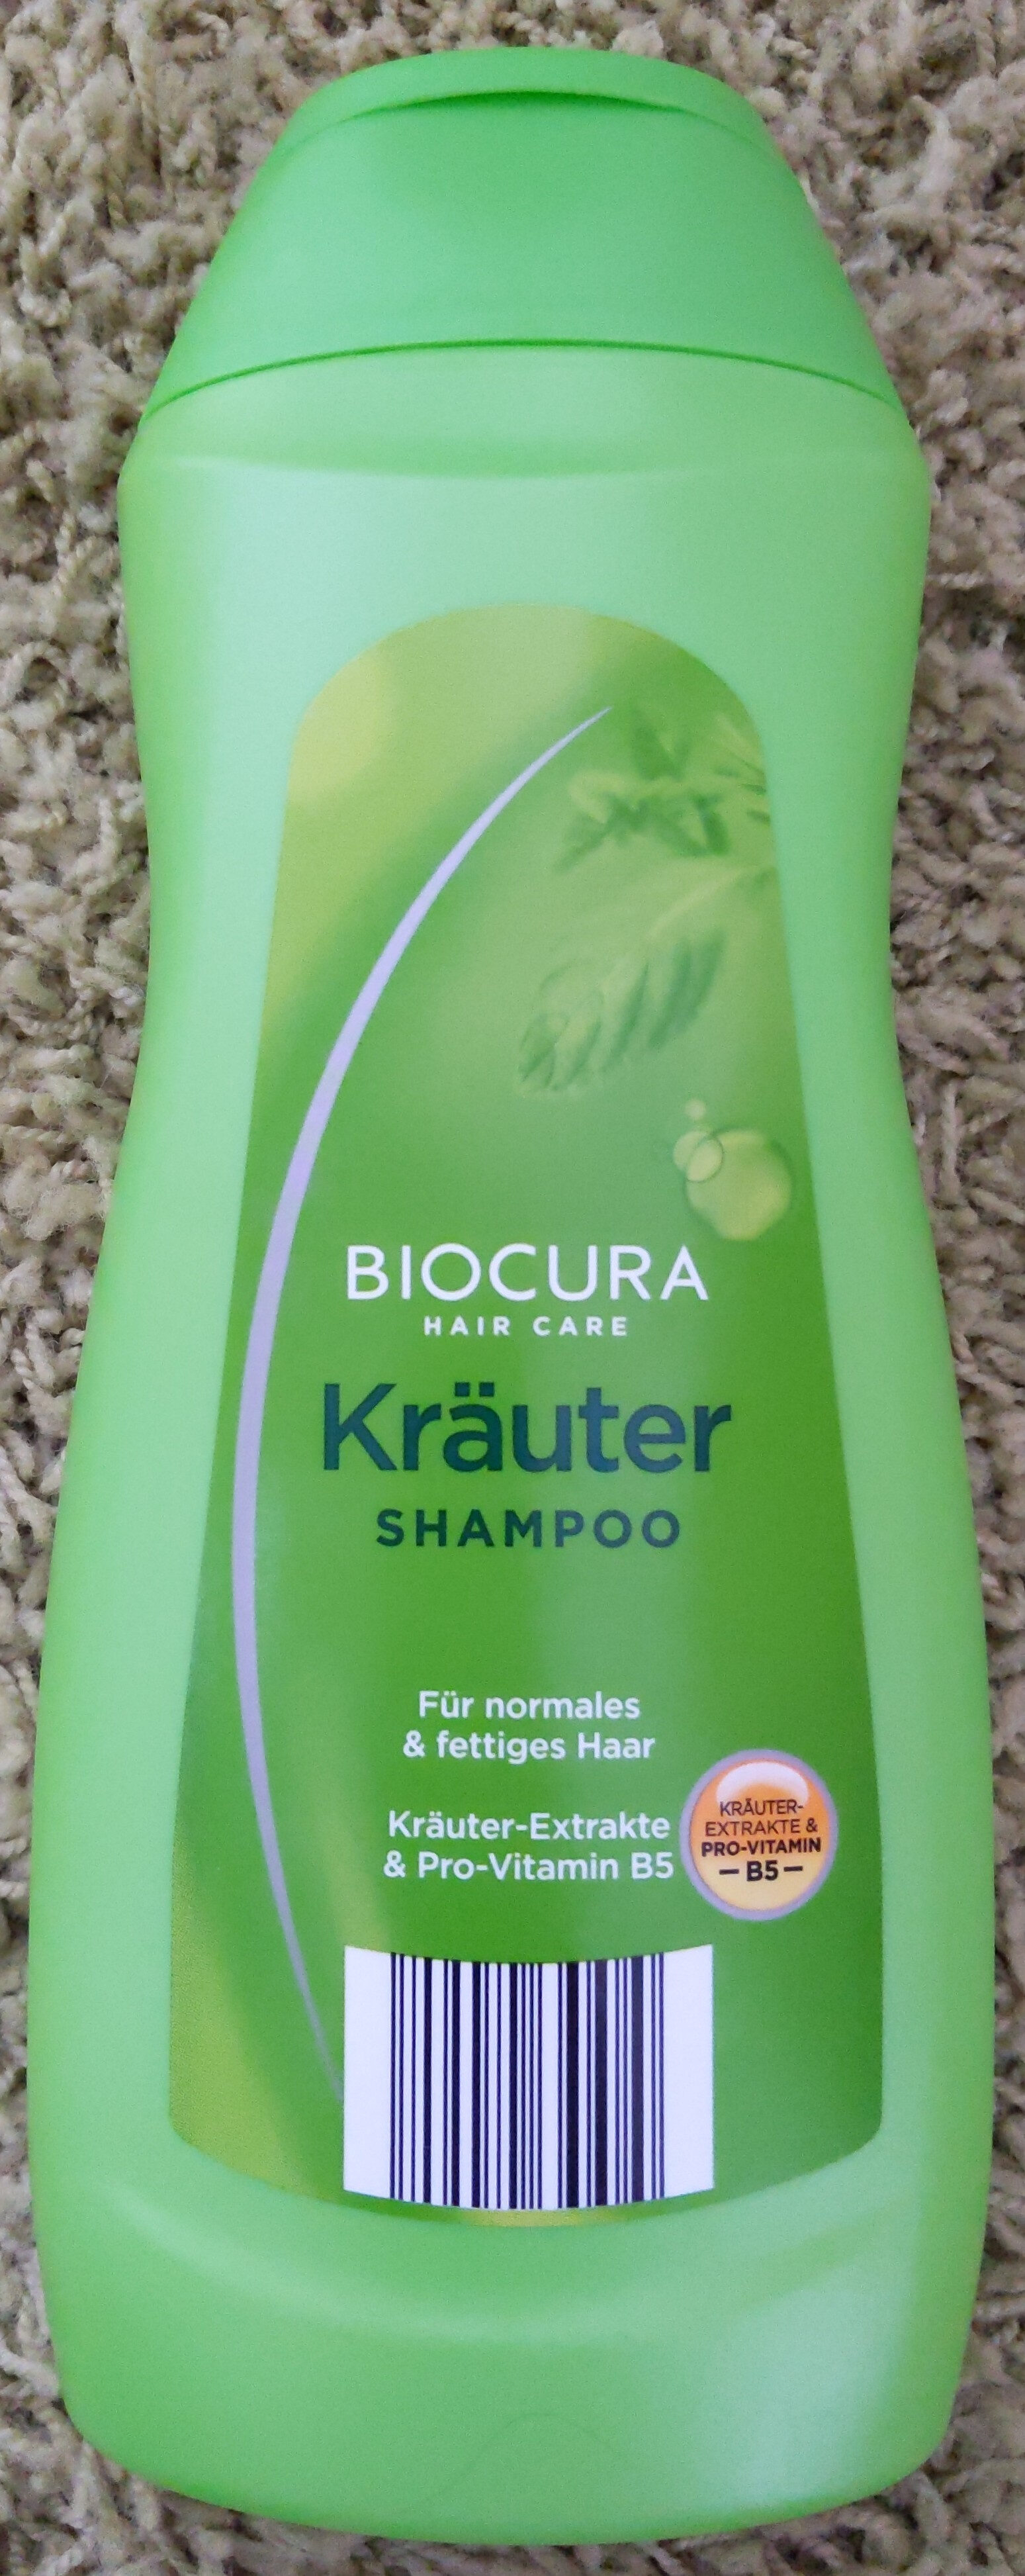 Kräuter Shampoo - Product - en